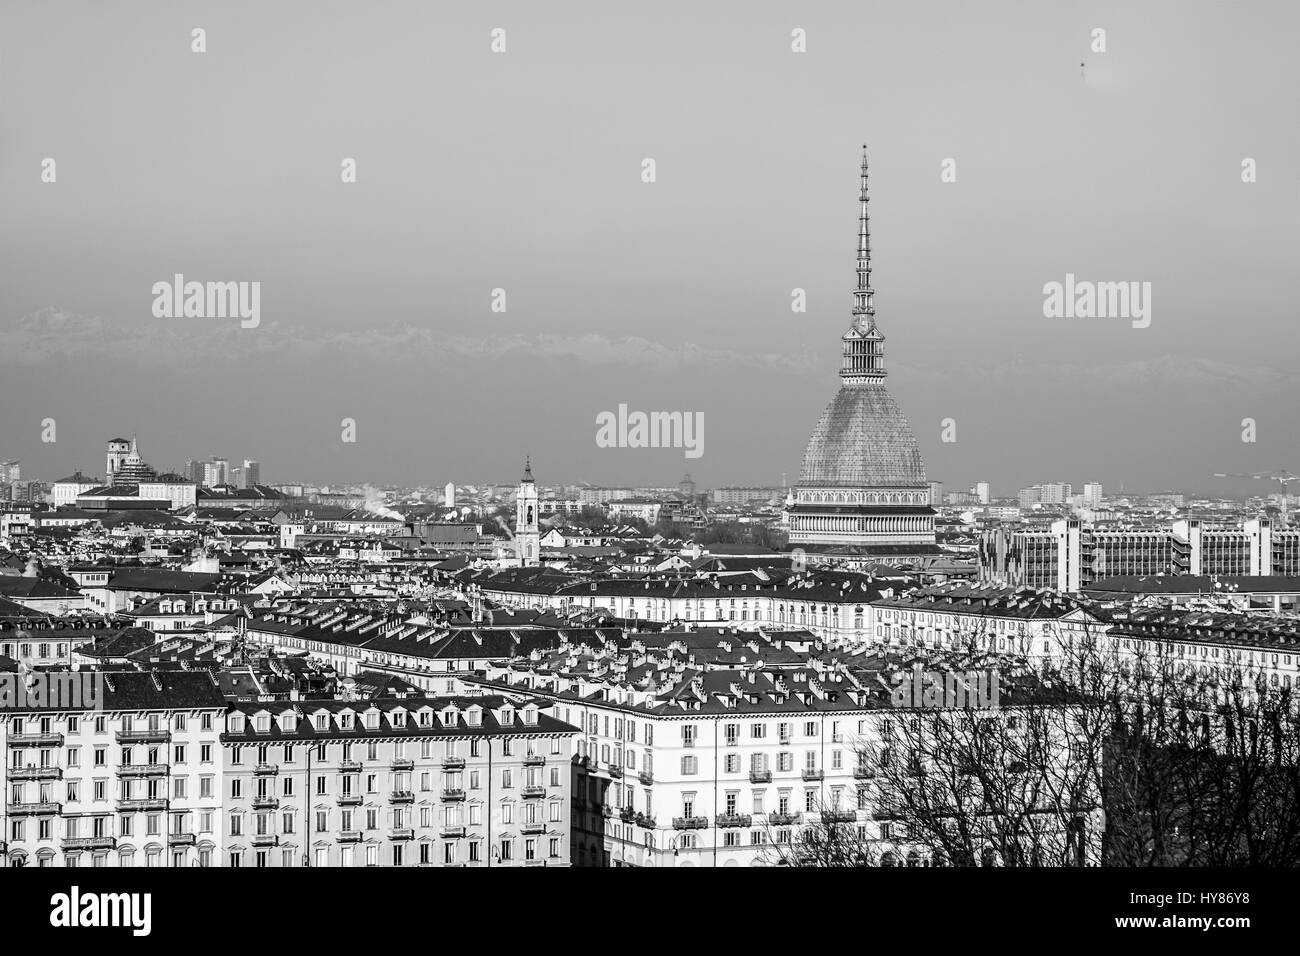 Ciudad de Turín Turín skyline panorama visto desde la colina de alto rango dinámico (HDR - blanco y negro Foto de stock